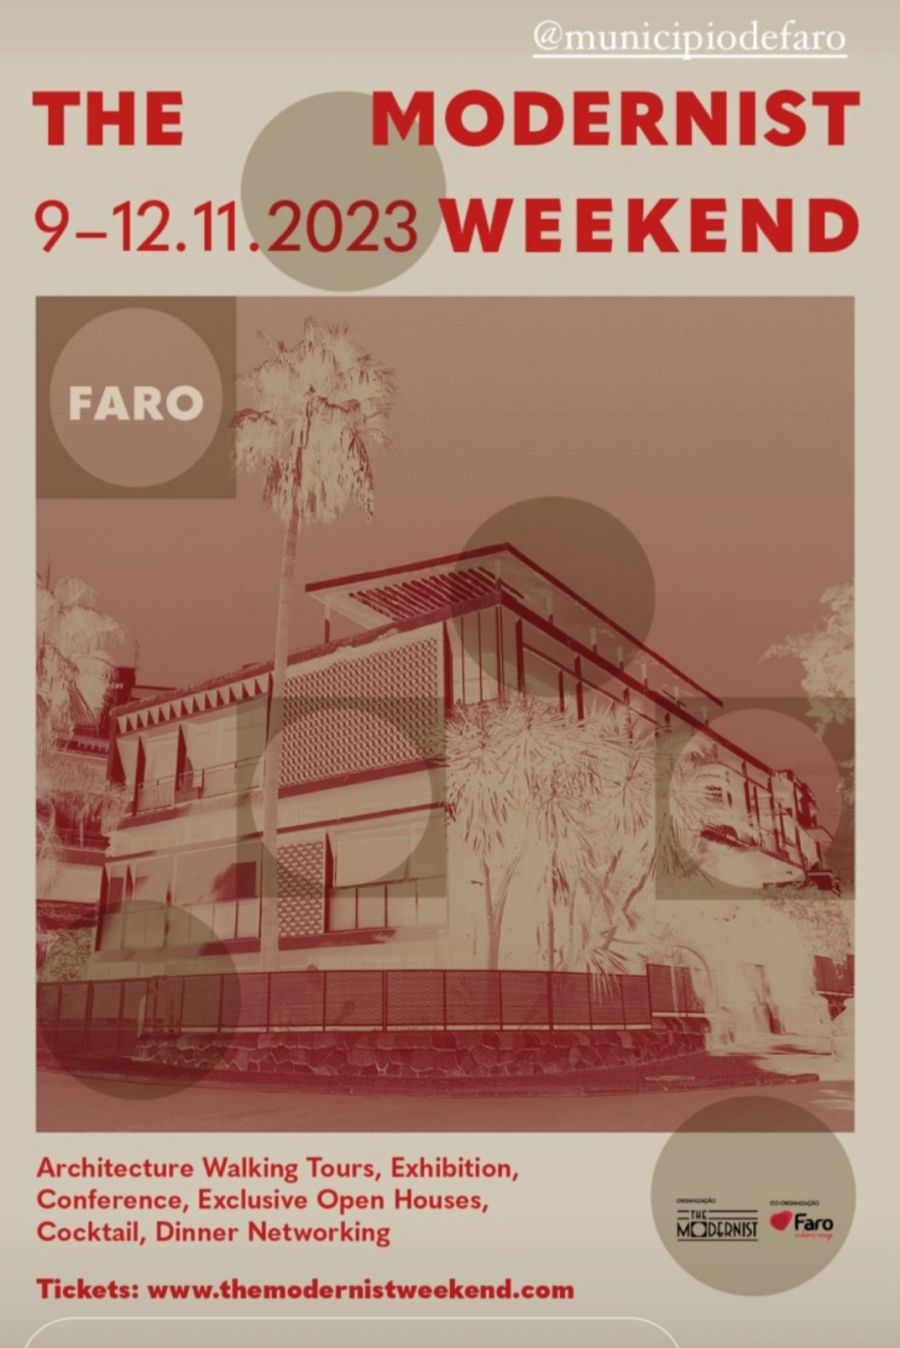 Faro Modernist Weekend